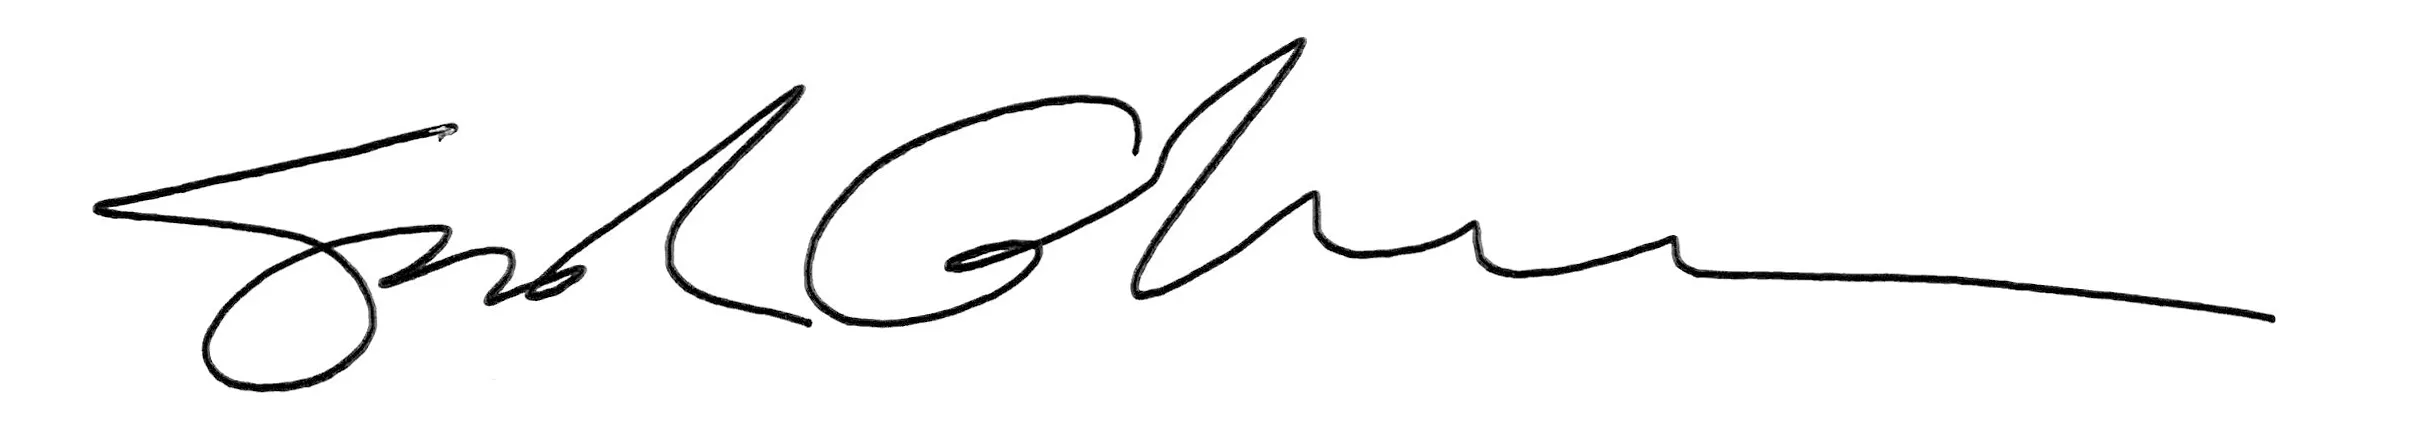 Image of Suresh Gunasekaran Signature